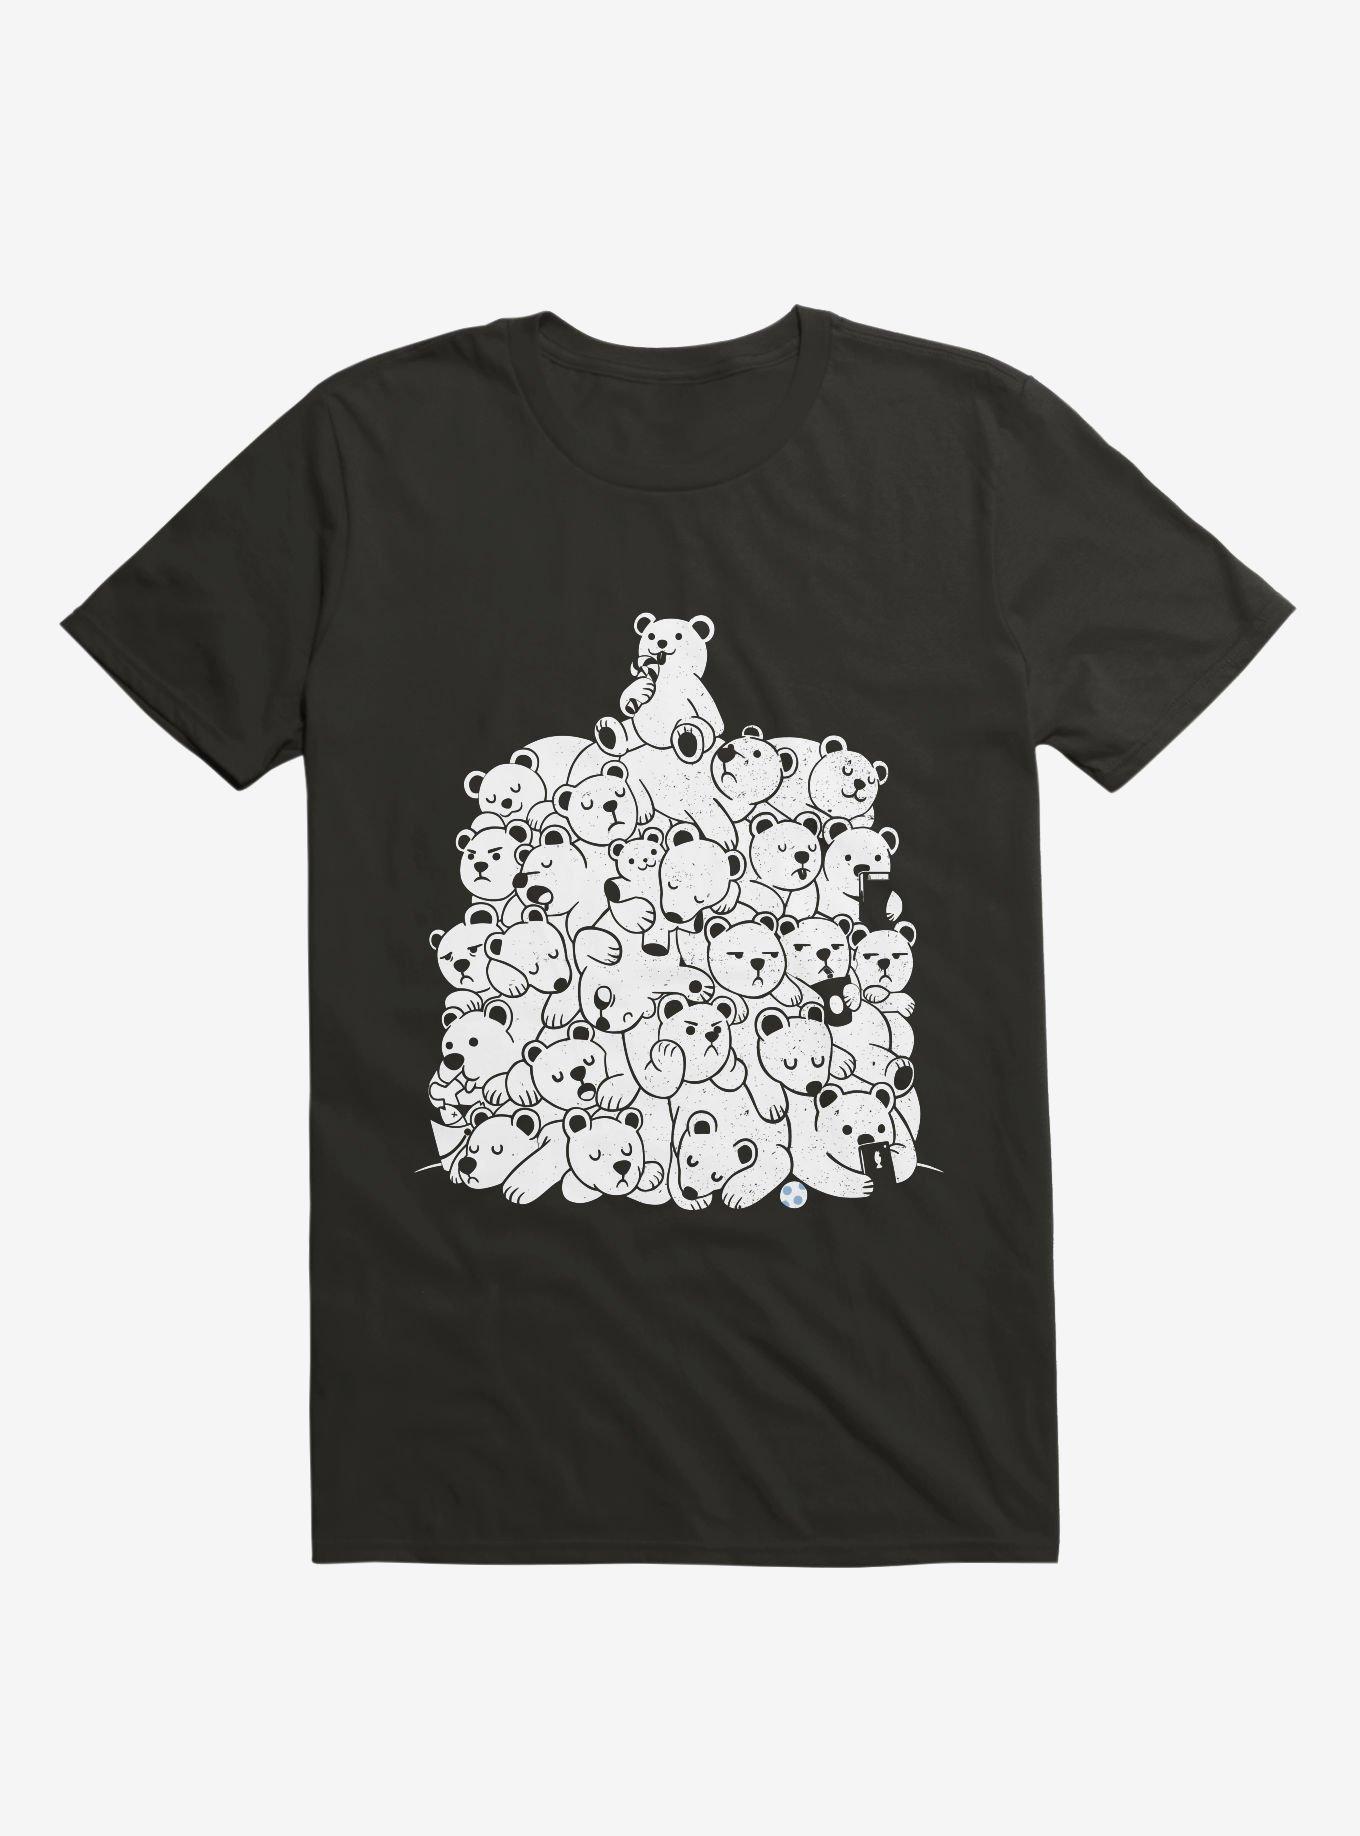 Bears Hibernation T-Shirt